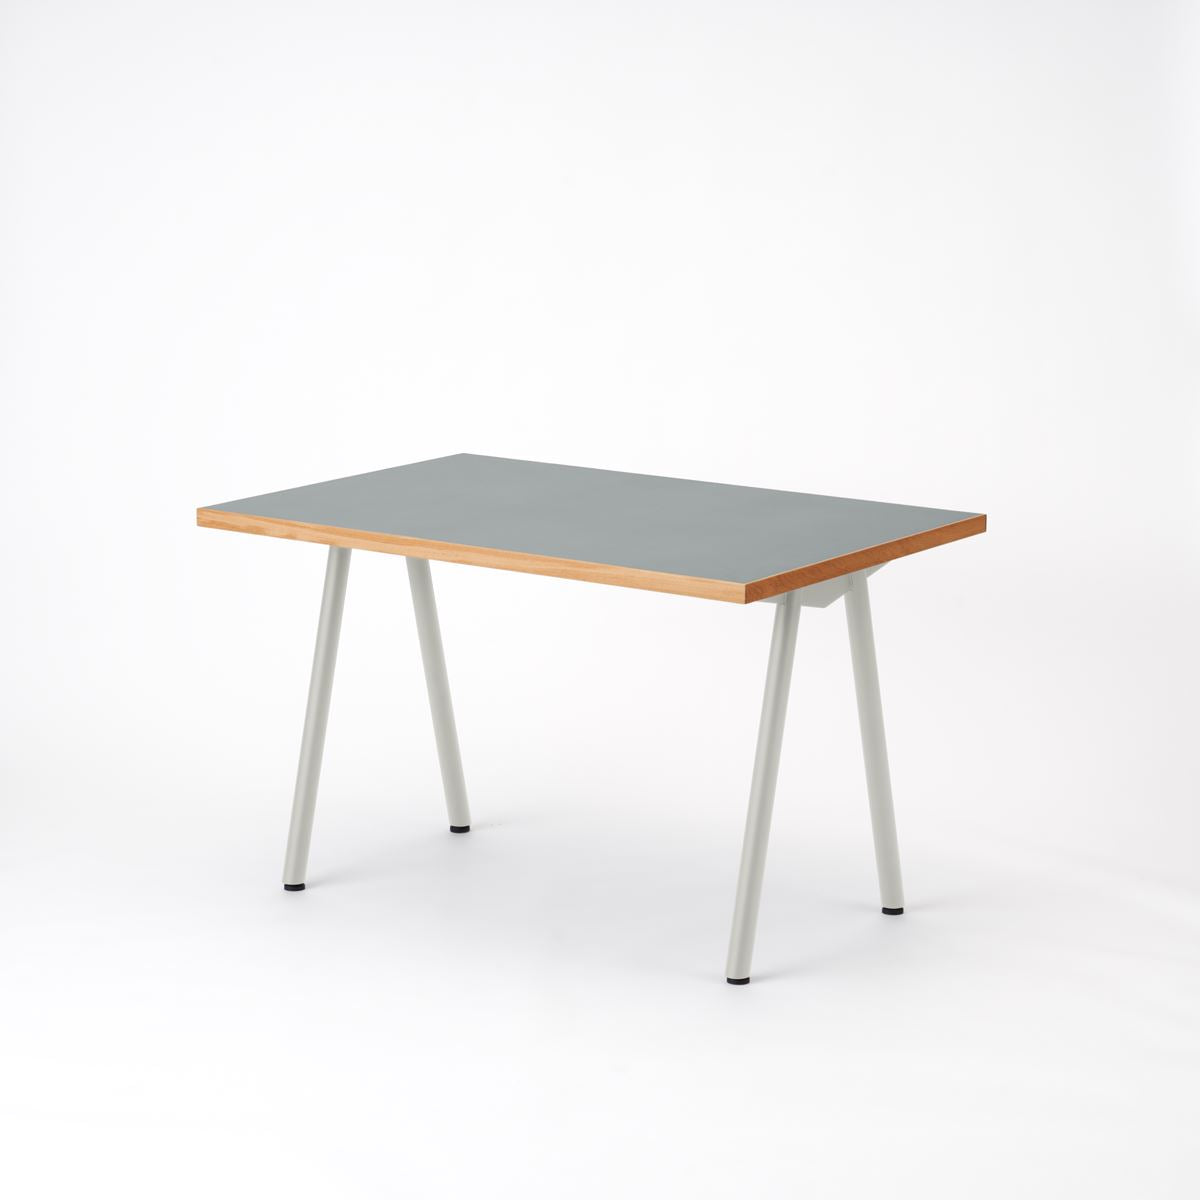 KUUM  Table W1200 × D800 - メラミン/Gray / クーム テーブル